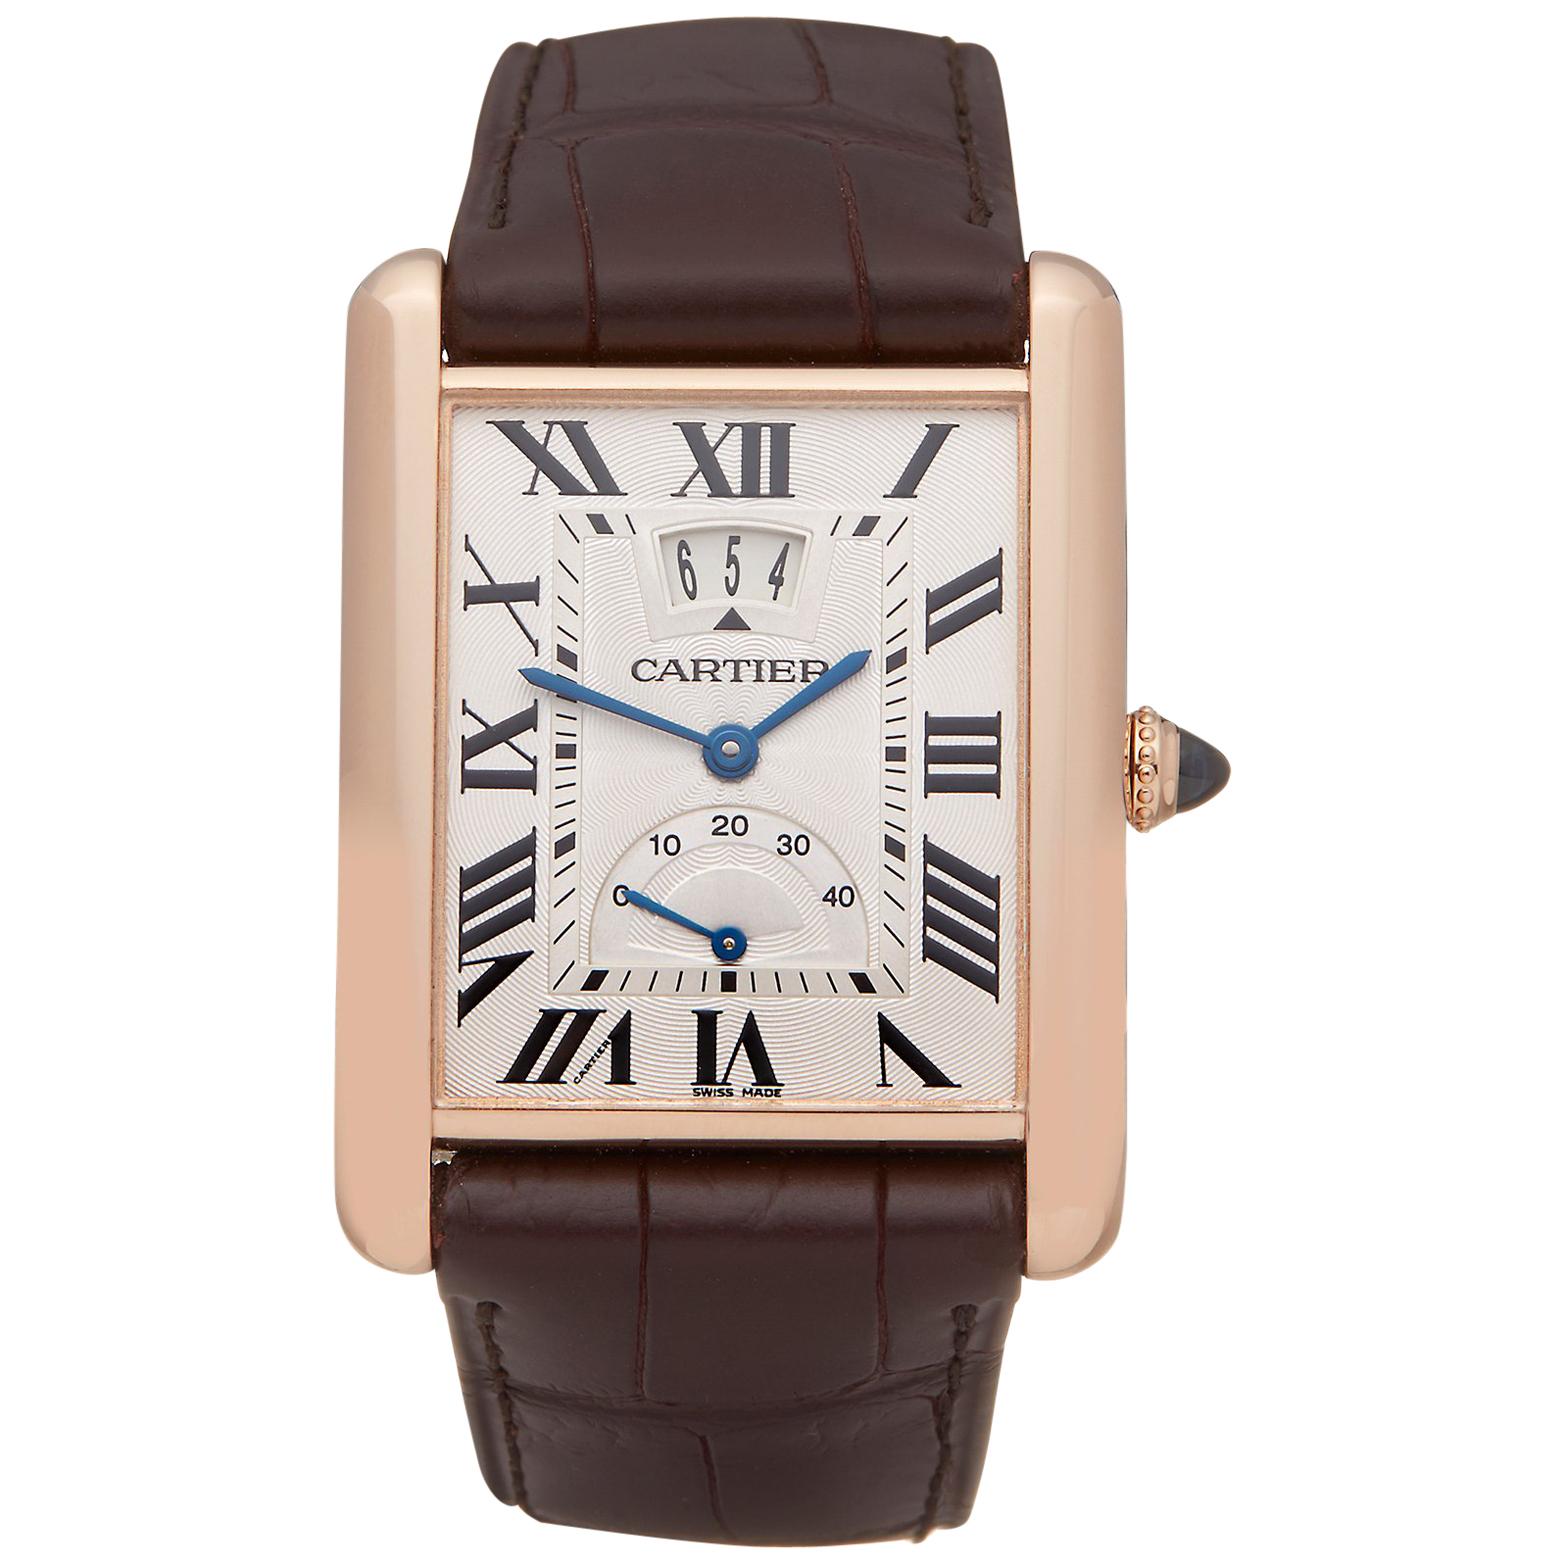 Cartier Tank Louis Cartier Big Date L XL 18k Rose Gold W1560003 Or 3185 Watch